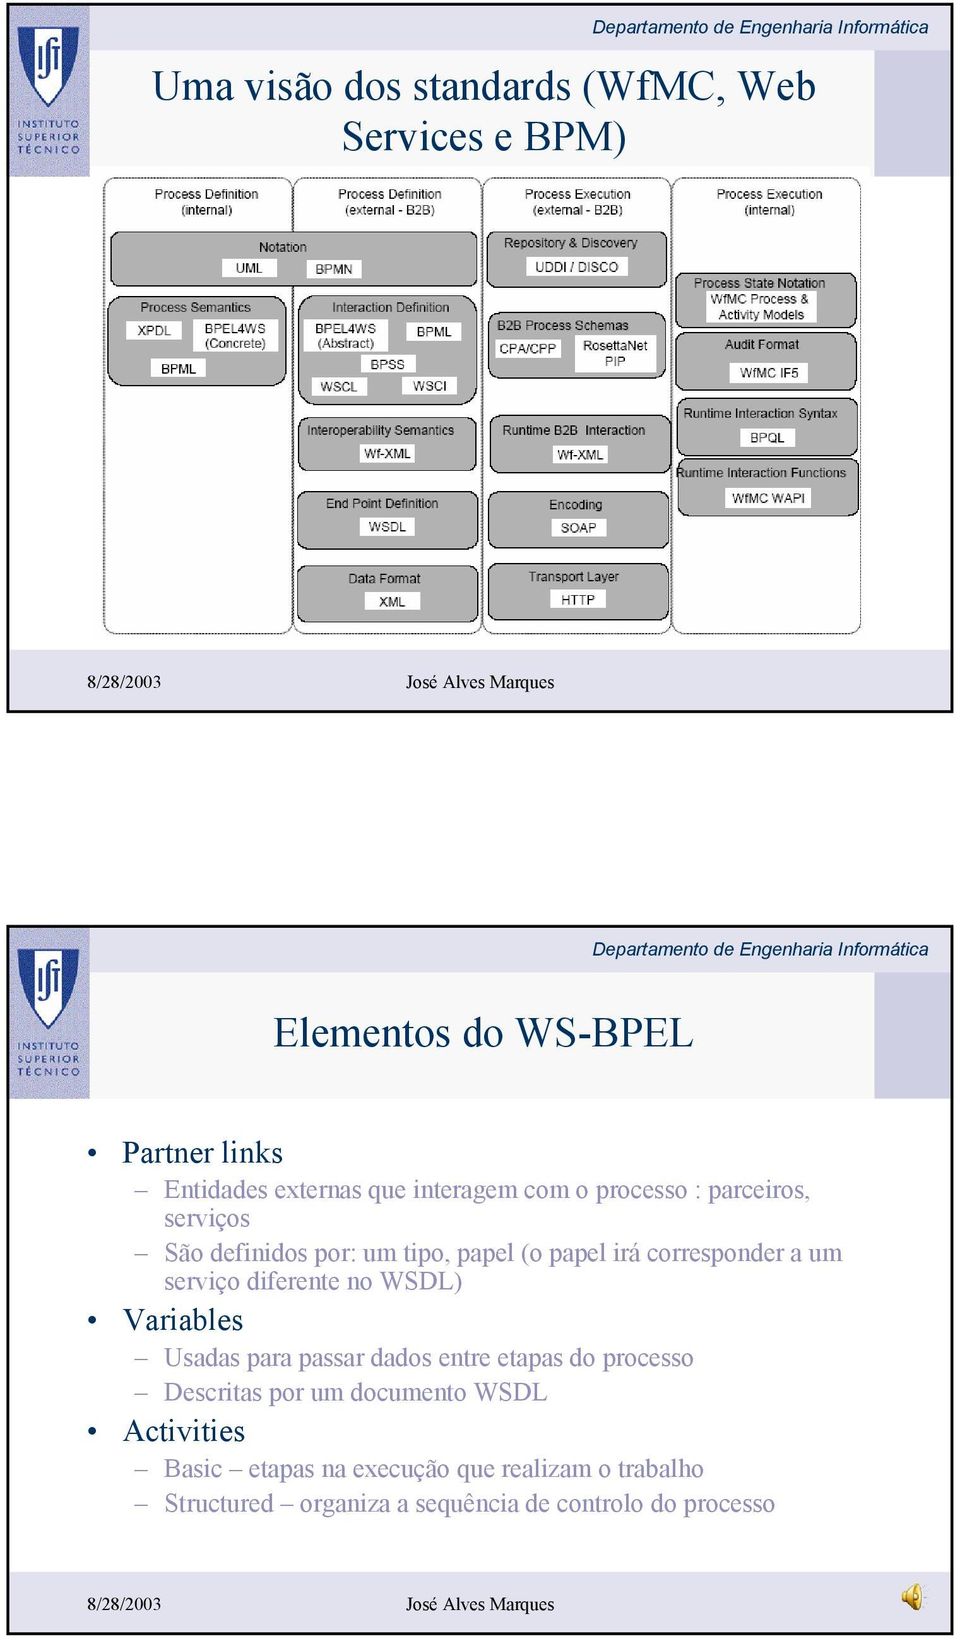 serviço diferente no WSDL) Variables Usadas para passar dados entre etapas do processo Descritas por um documento